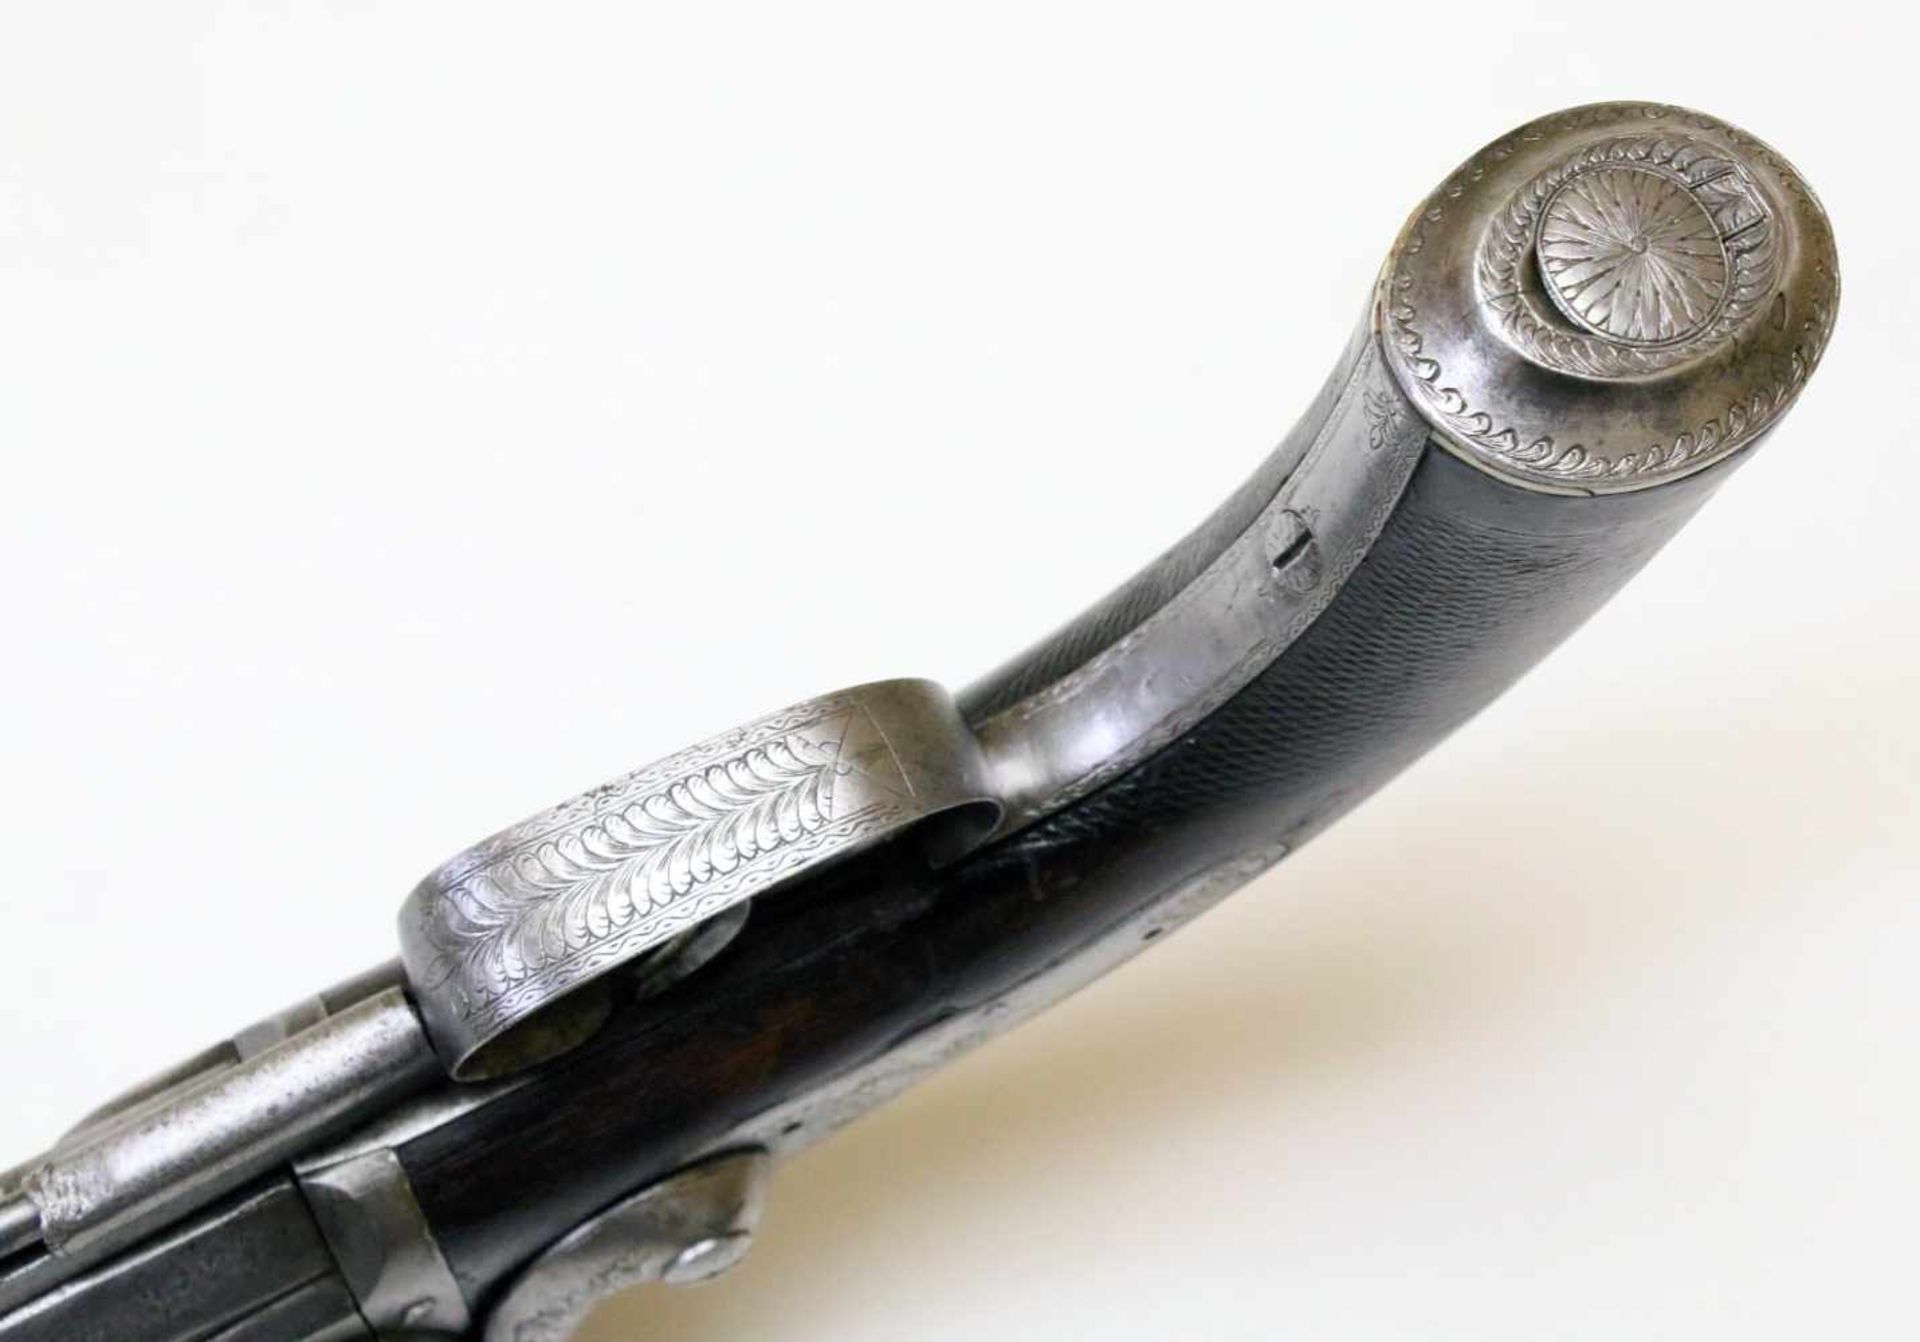 Doppelläufige Perkussionspistole - England um 1850 Cal. 14mm Perk., Zustand 2. Zwei übereinander - Bild 10 aus 15